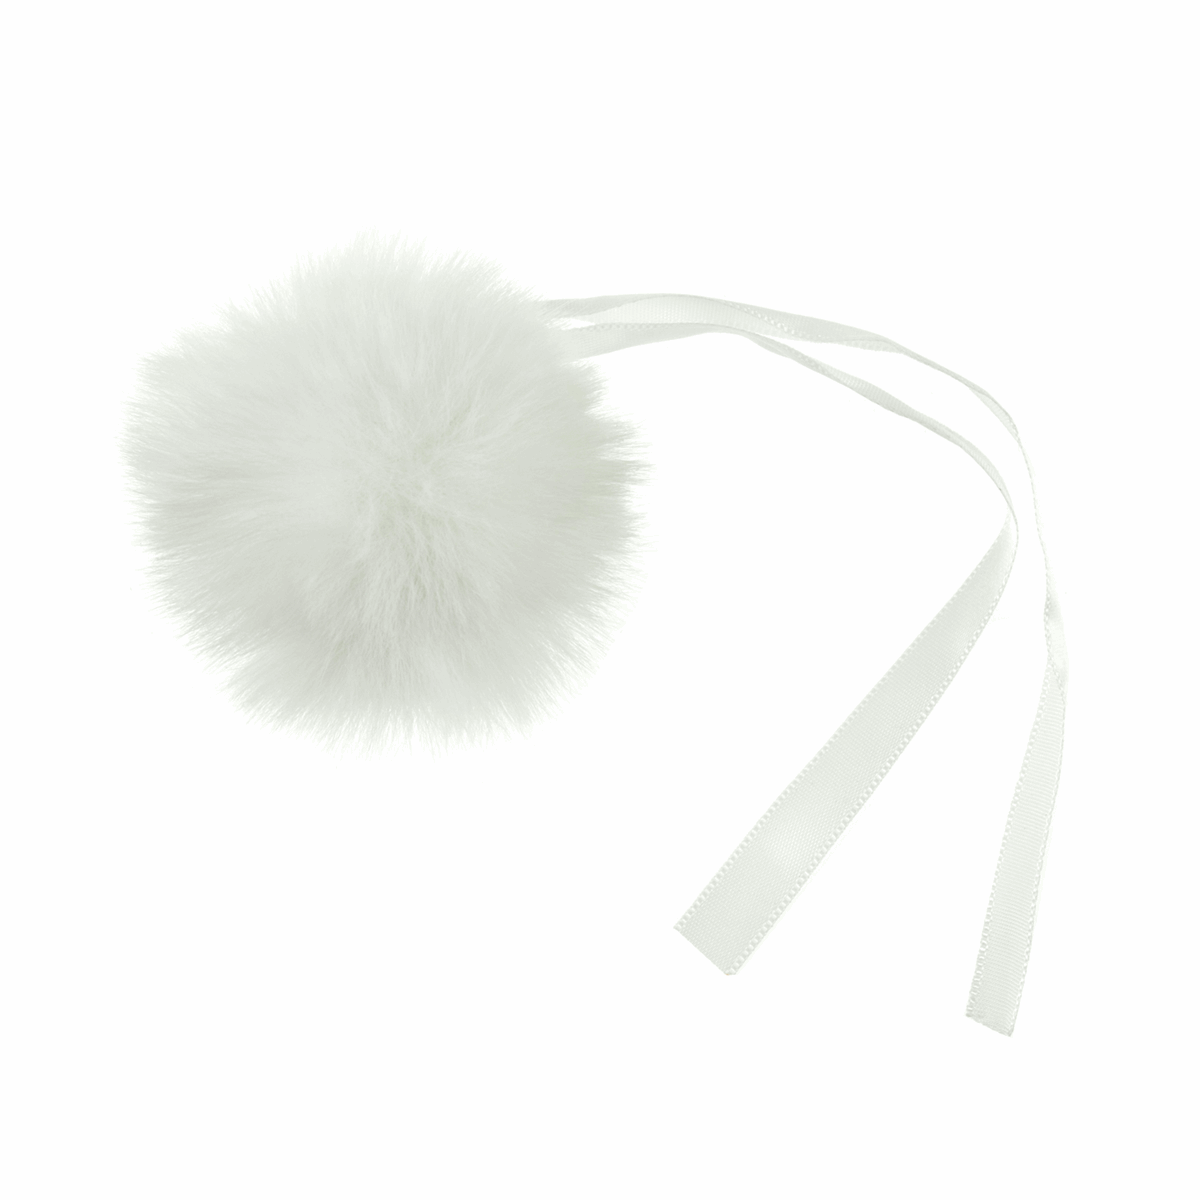 Trimits Medium Faux Fur Pompom 6cm